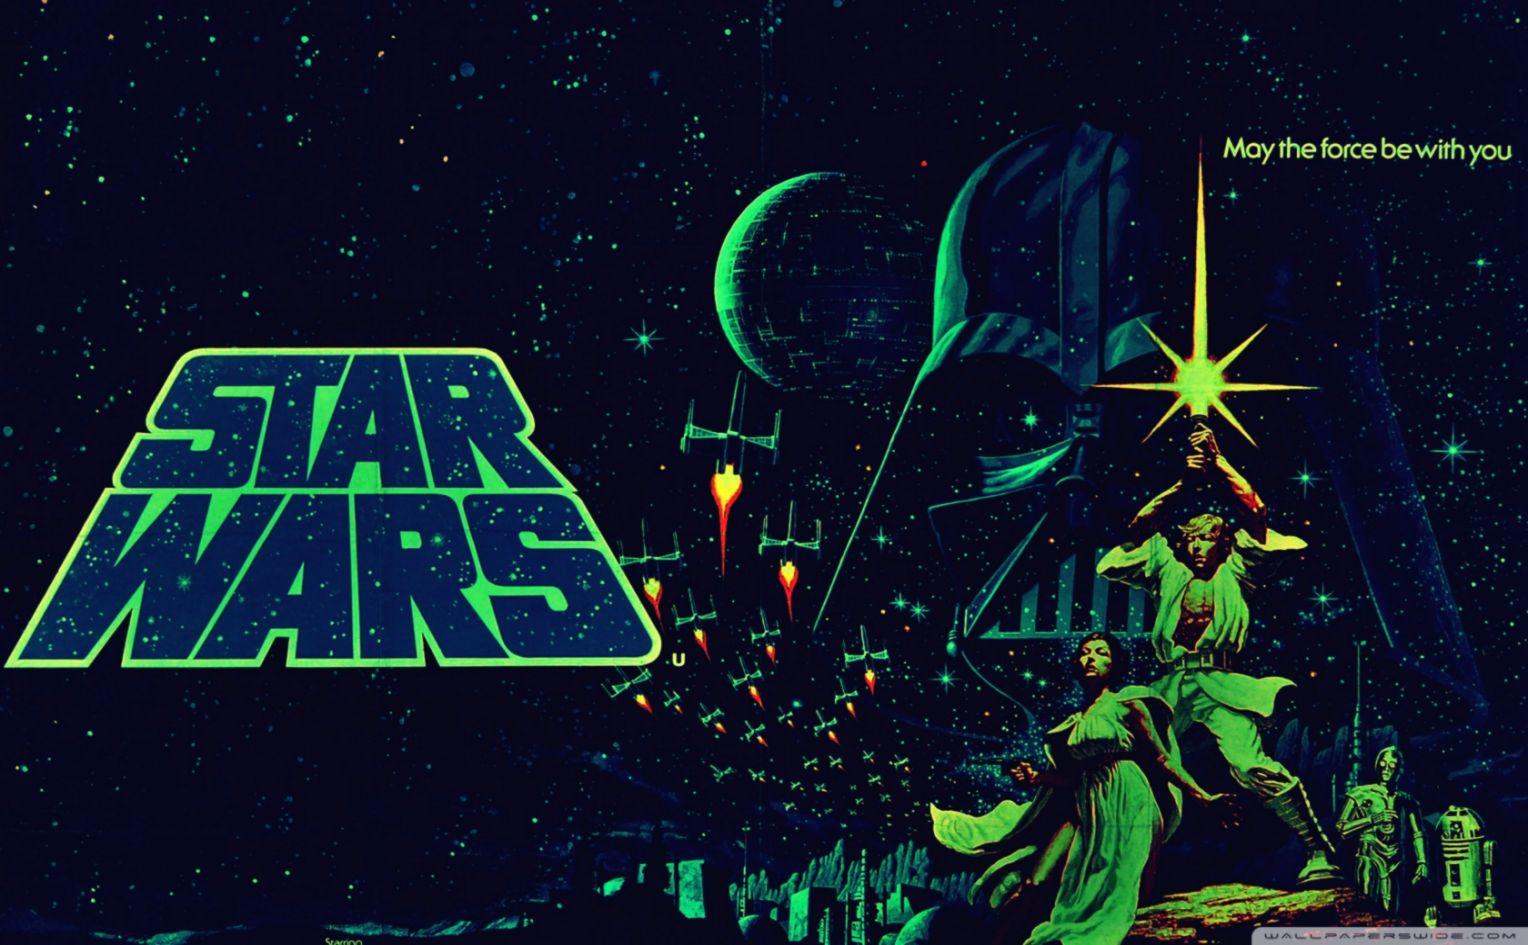 Classic Movie Star Wars Wallpaper